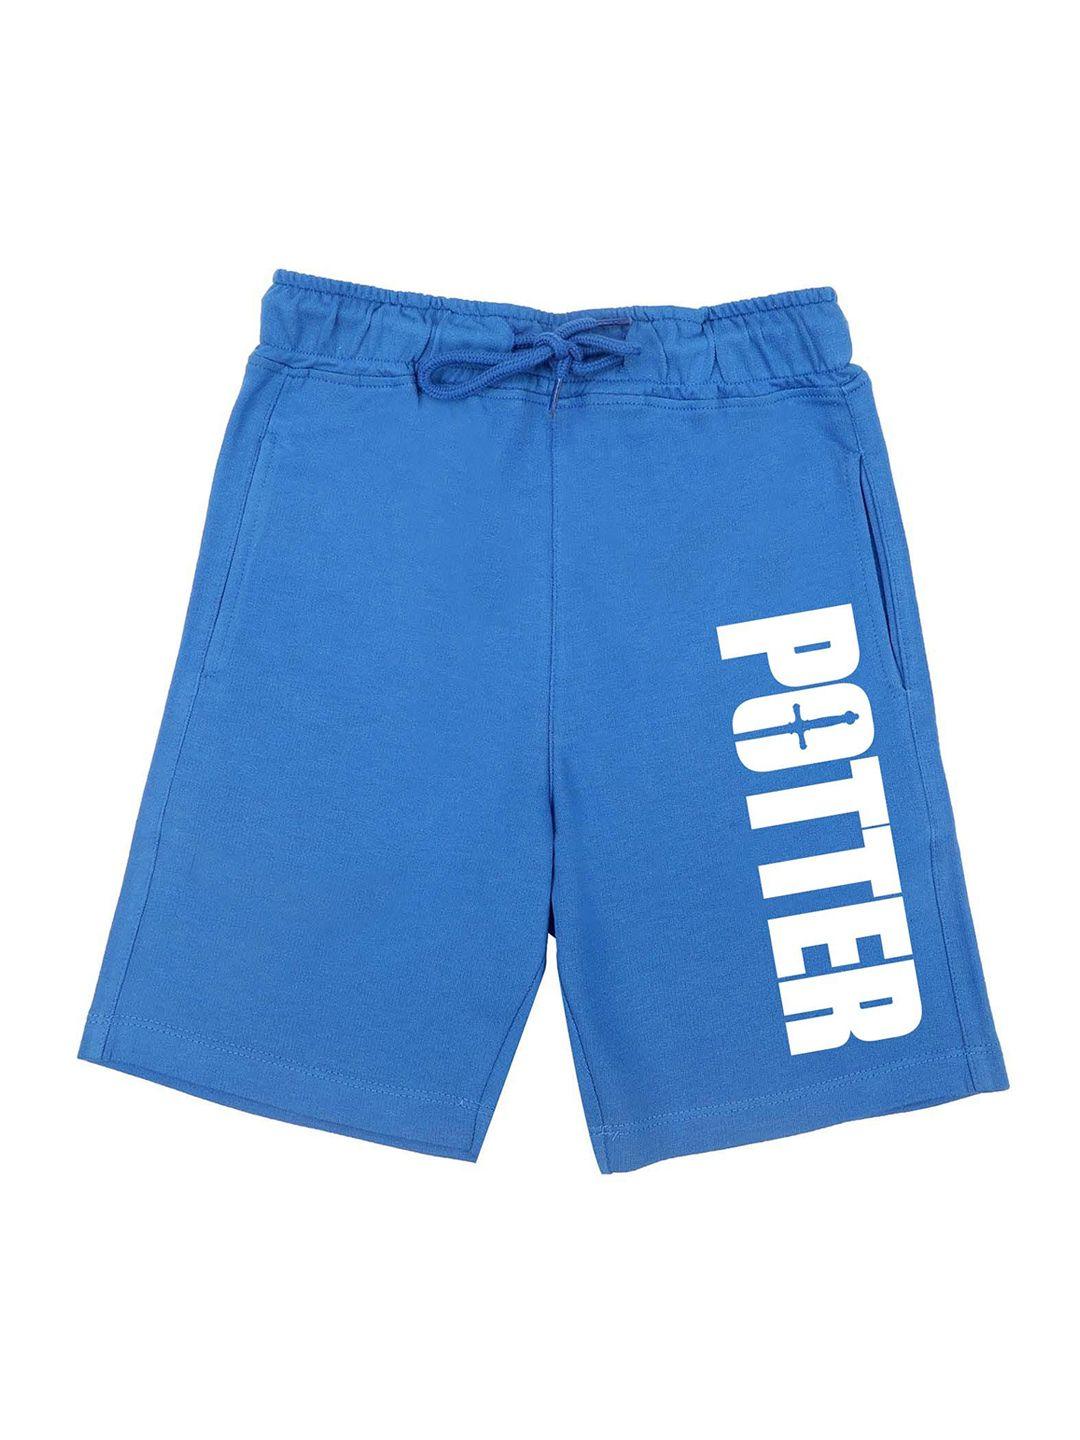 harry-potter-by-wear-your-mind-boys-blue-harry-potter-shorts